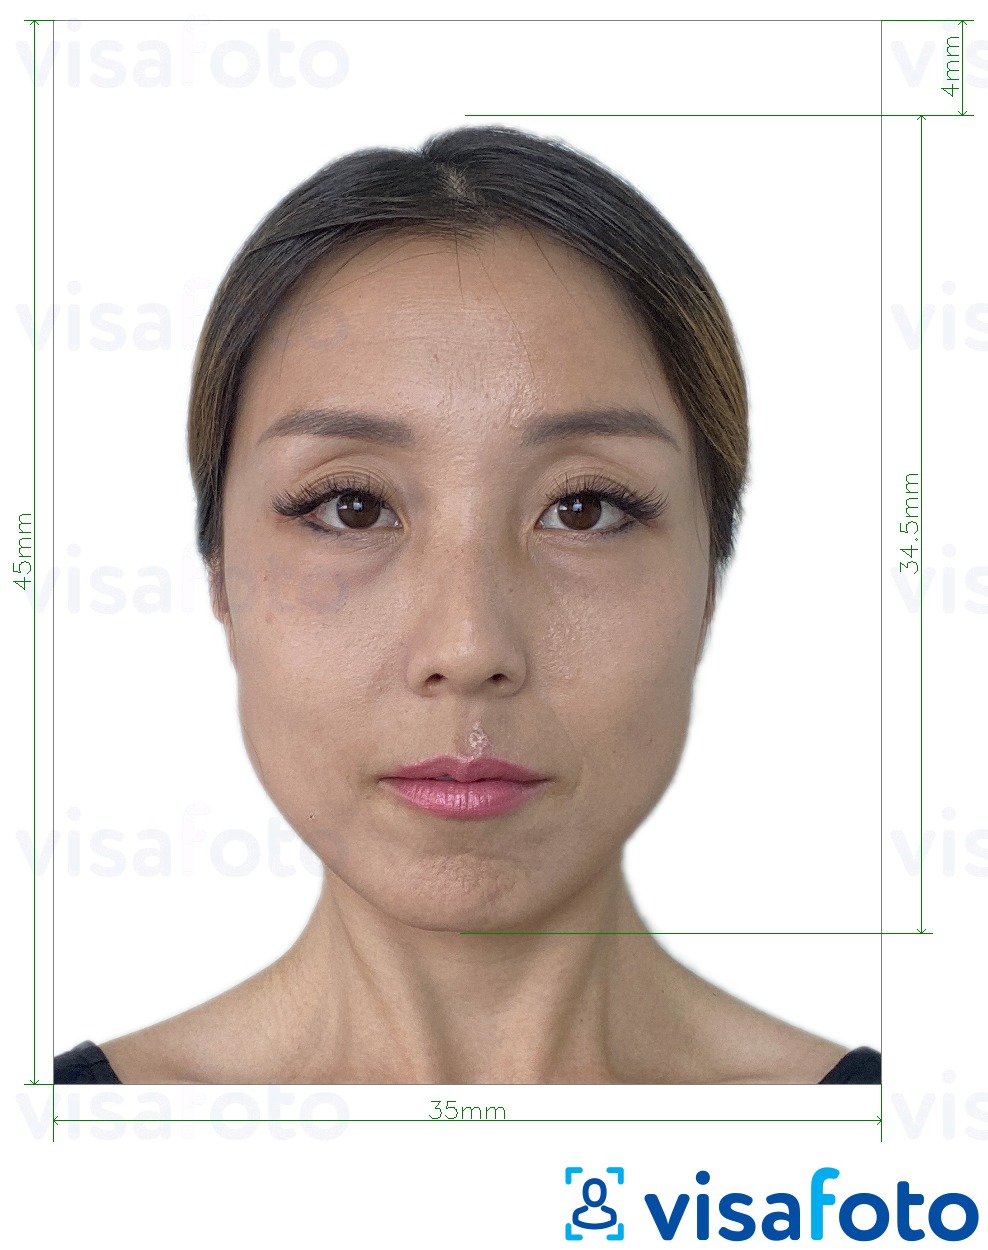 Ejemplo de foto para Tarjeta de identidad de residente de Macao (BIR) 45x35 mm con la especificación del tamaño exacto